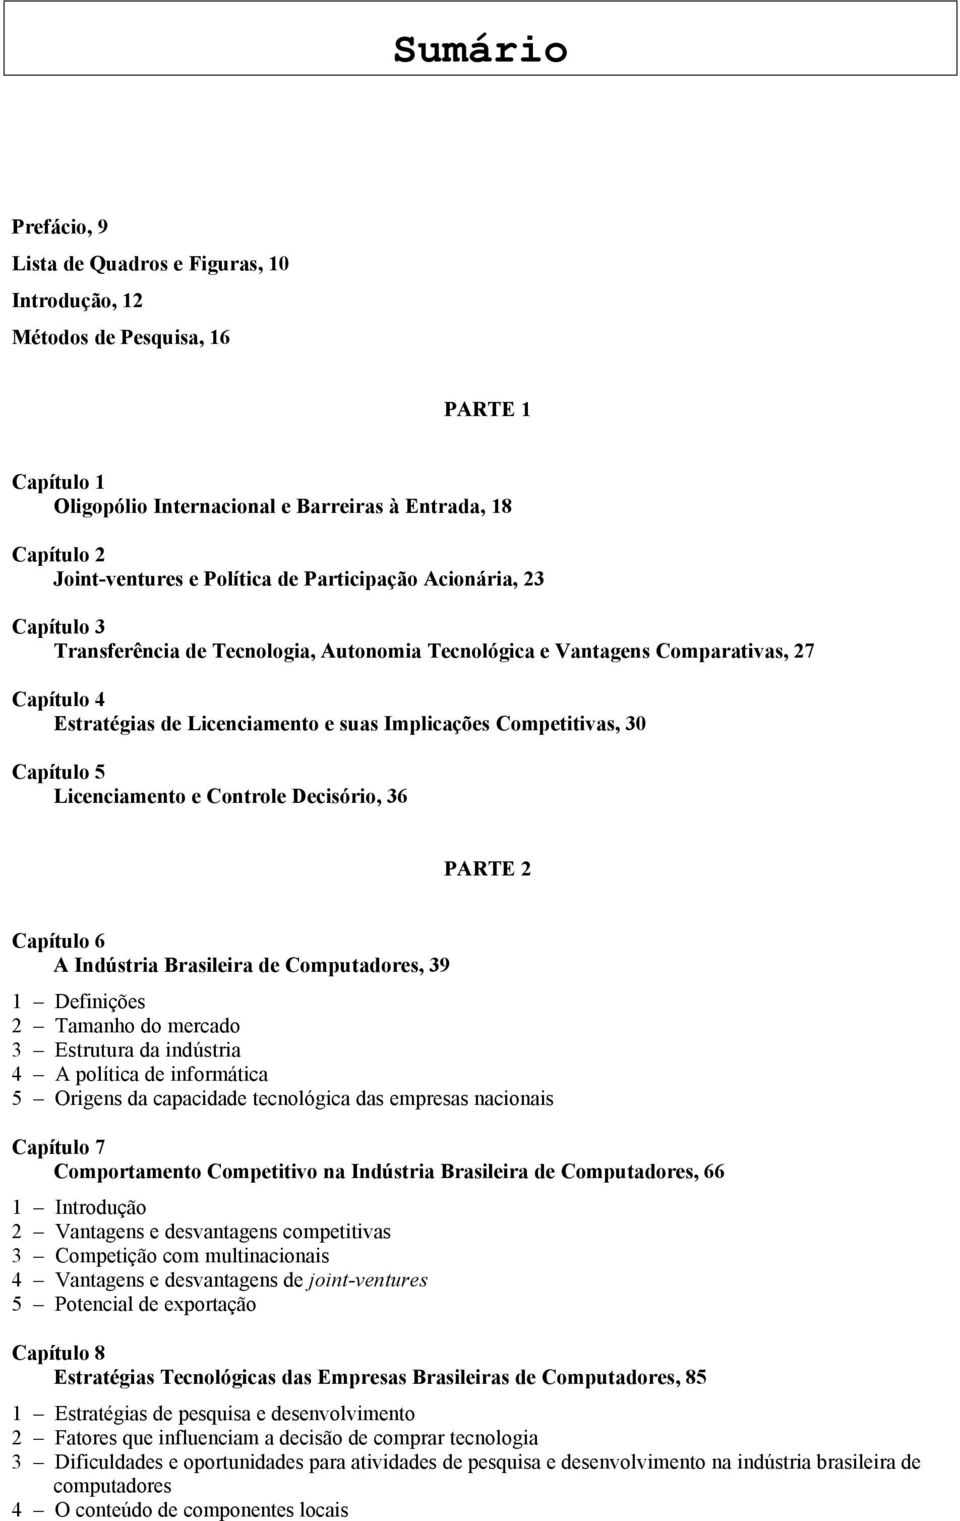 Capítulo 5 Licenciamento e Controle Decisório, 36 PARTE 2 Capítulo 6 A Indústria Brasileira de Computadores, 39 1 Definições 2 Tamanho do mercado 3 Estrutura da indústria 4 A política de informática